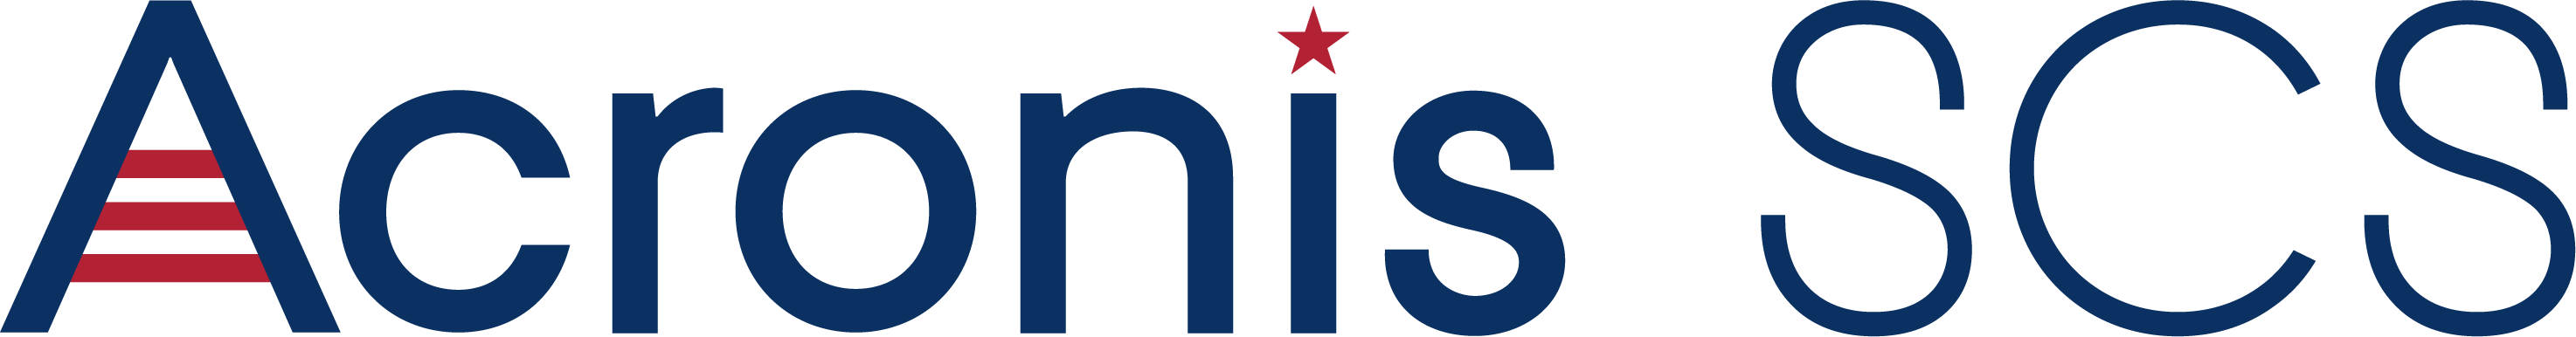 Acronis Scs Logo